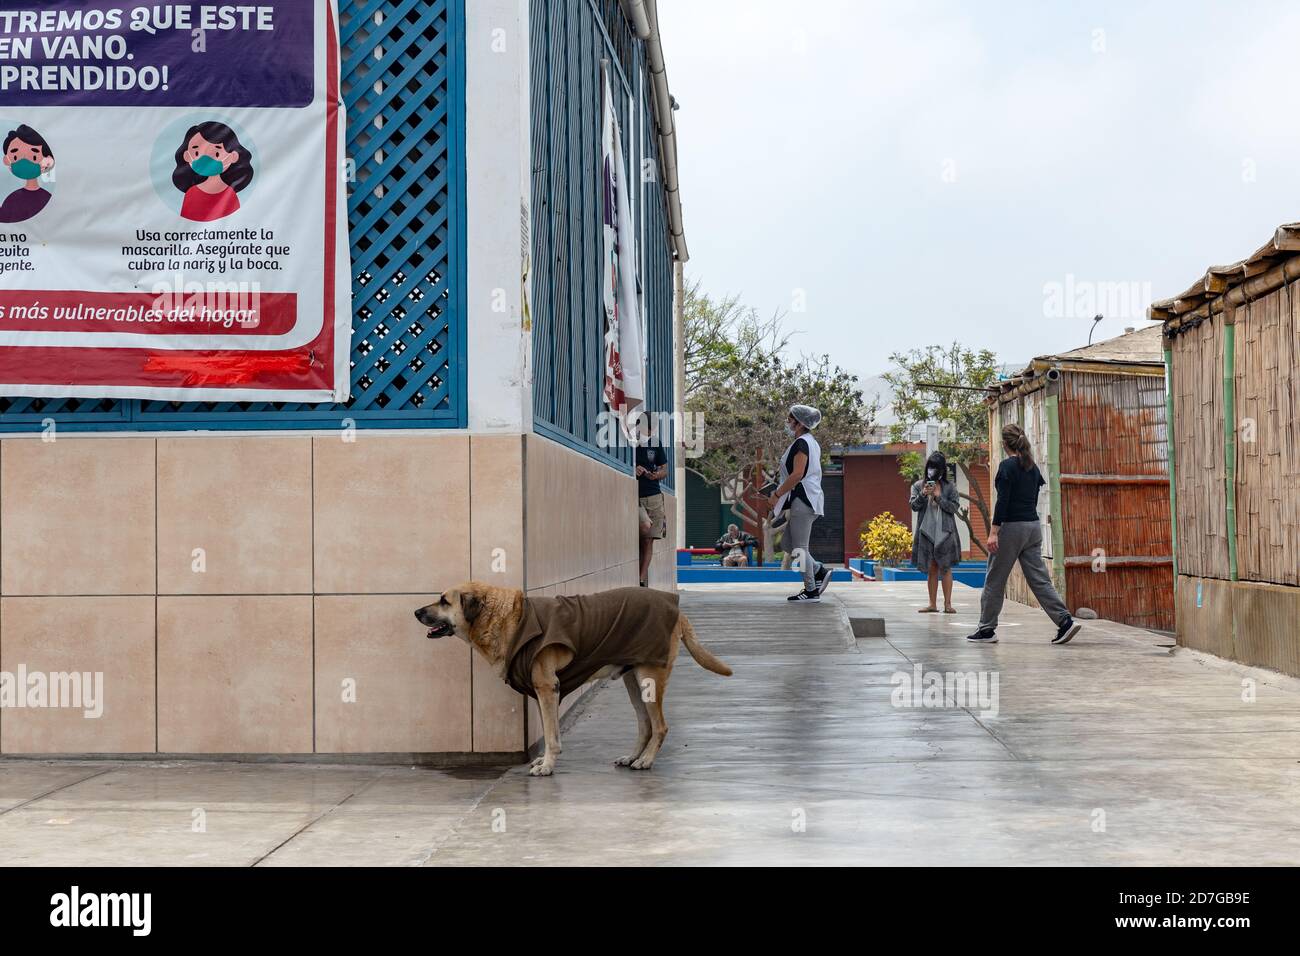 Tägliches Straßenleben Szenen der neuen Normalität, Menschen arbeiten und tragen Gesichtsmasken in Lima, Perú. Hund trägt Kleidung. Stockfoto